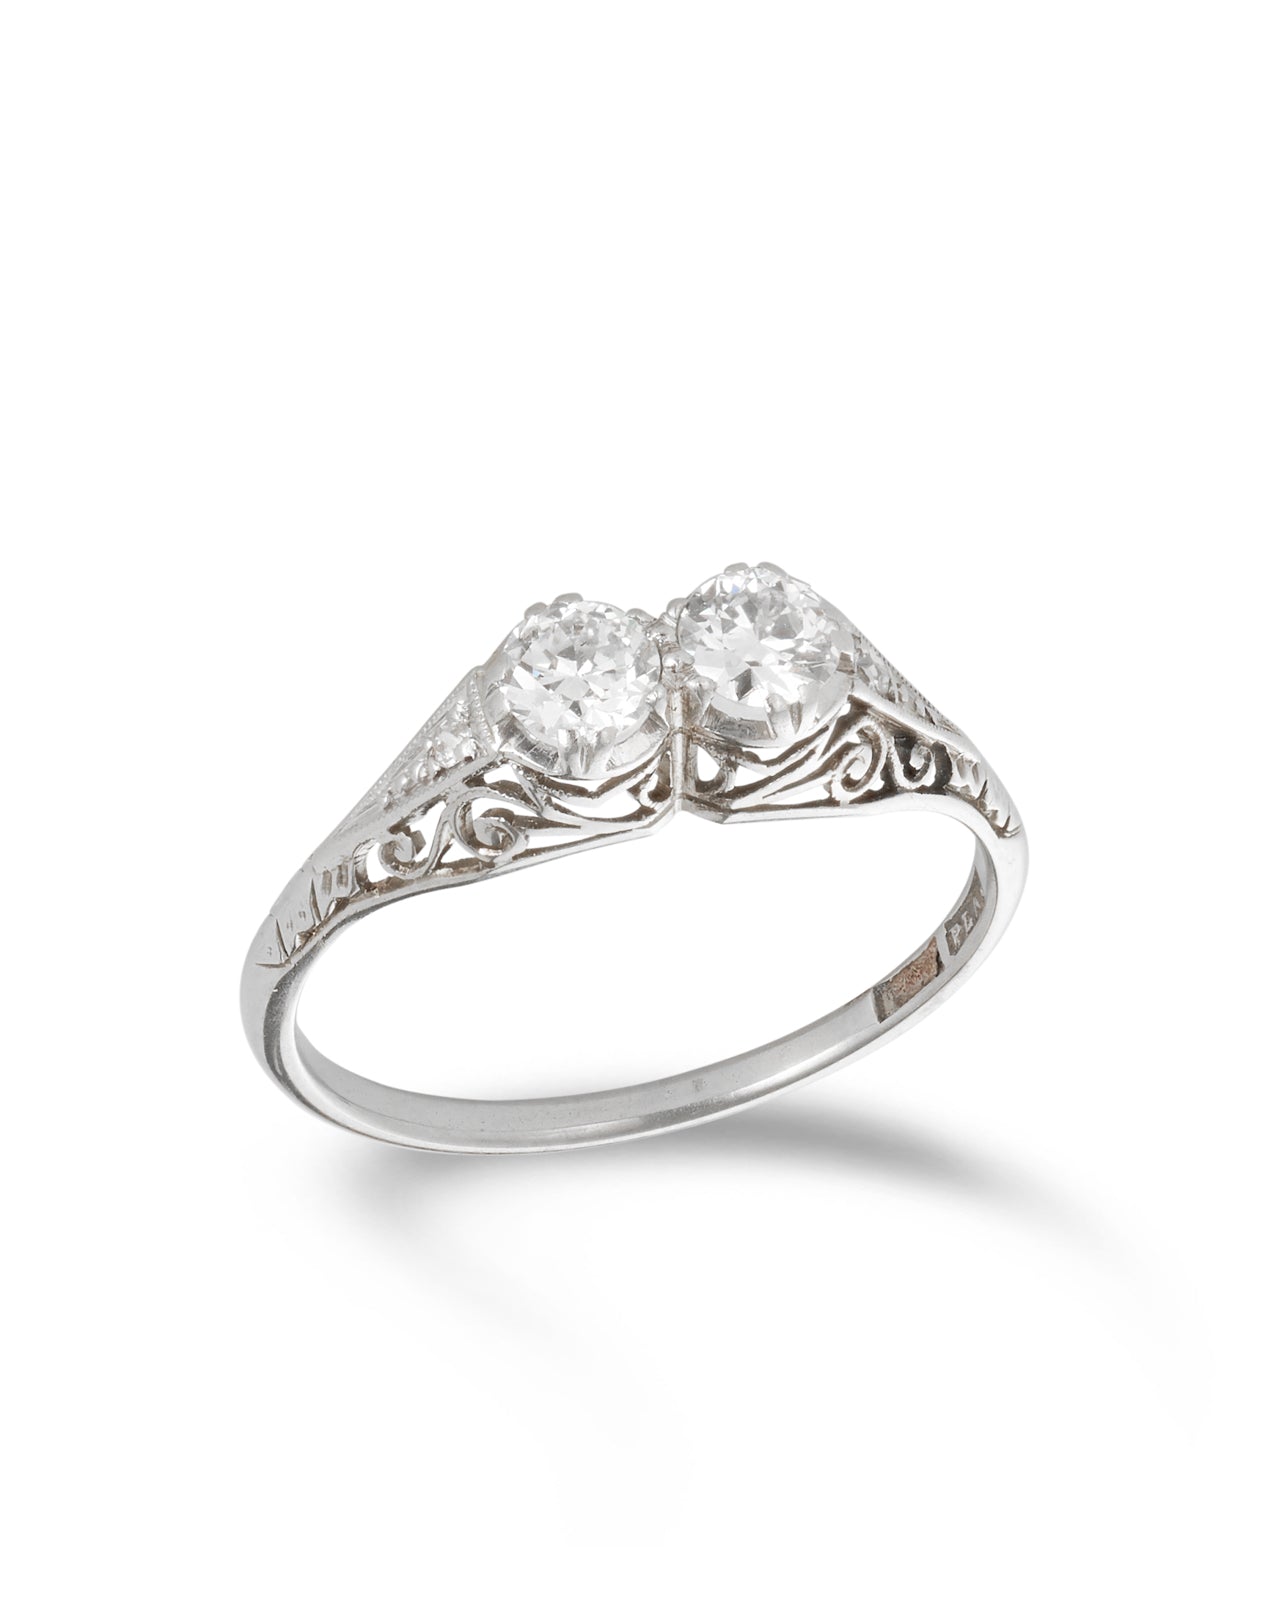 Antique Edwardian Two Stone Diamond Ring